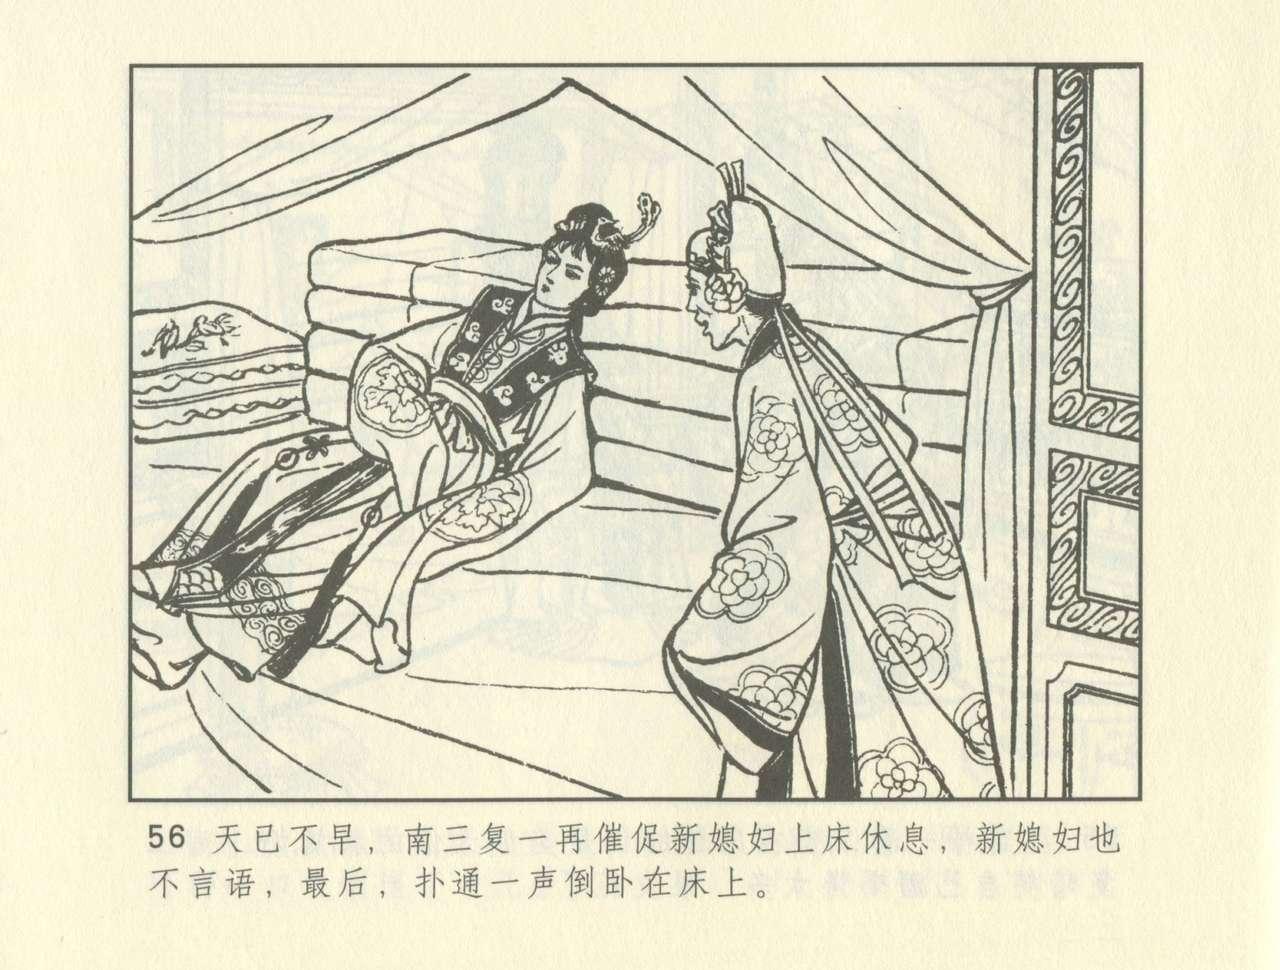 聊斋志异 张玮等绘 天津人民美术出版社 卷二十一 ~ 三十 265